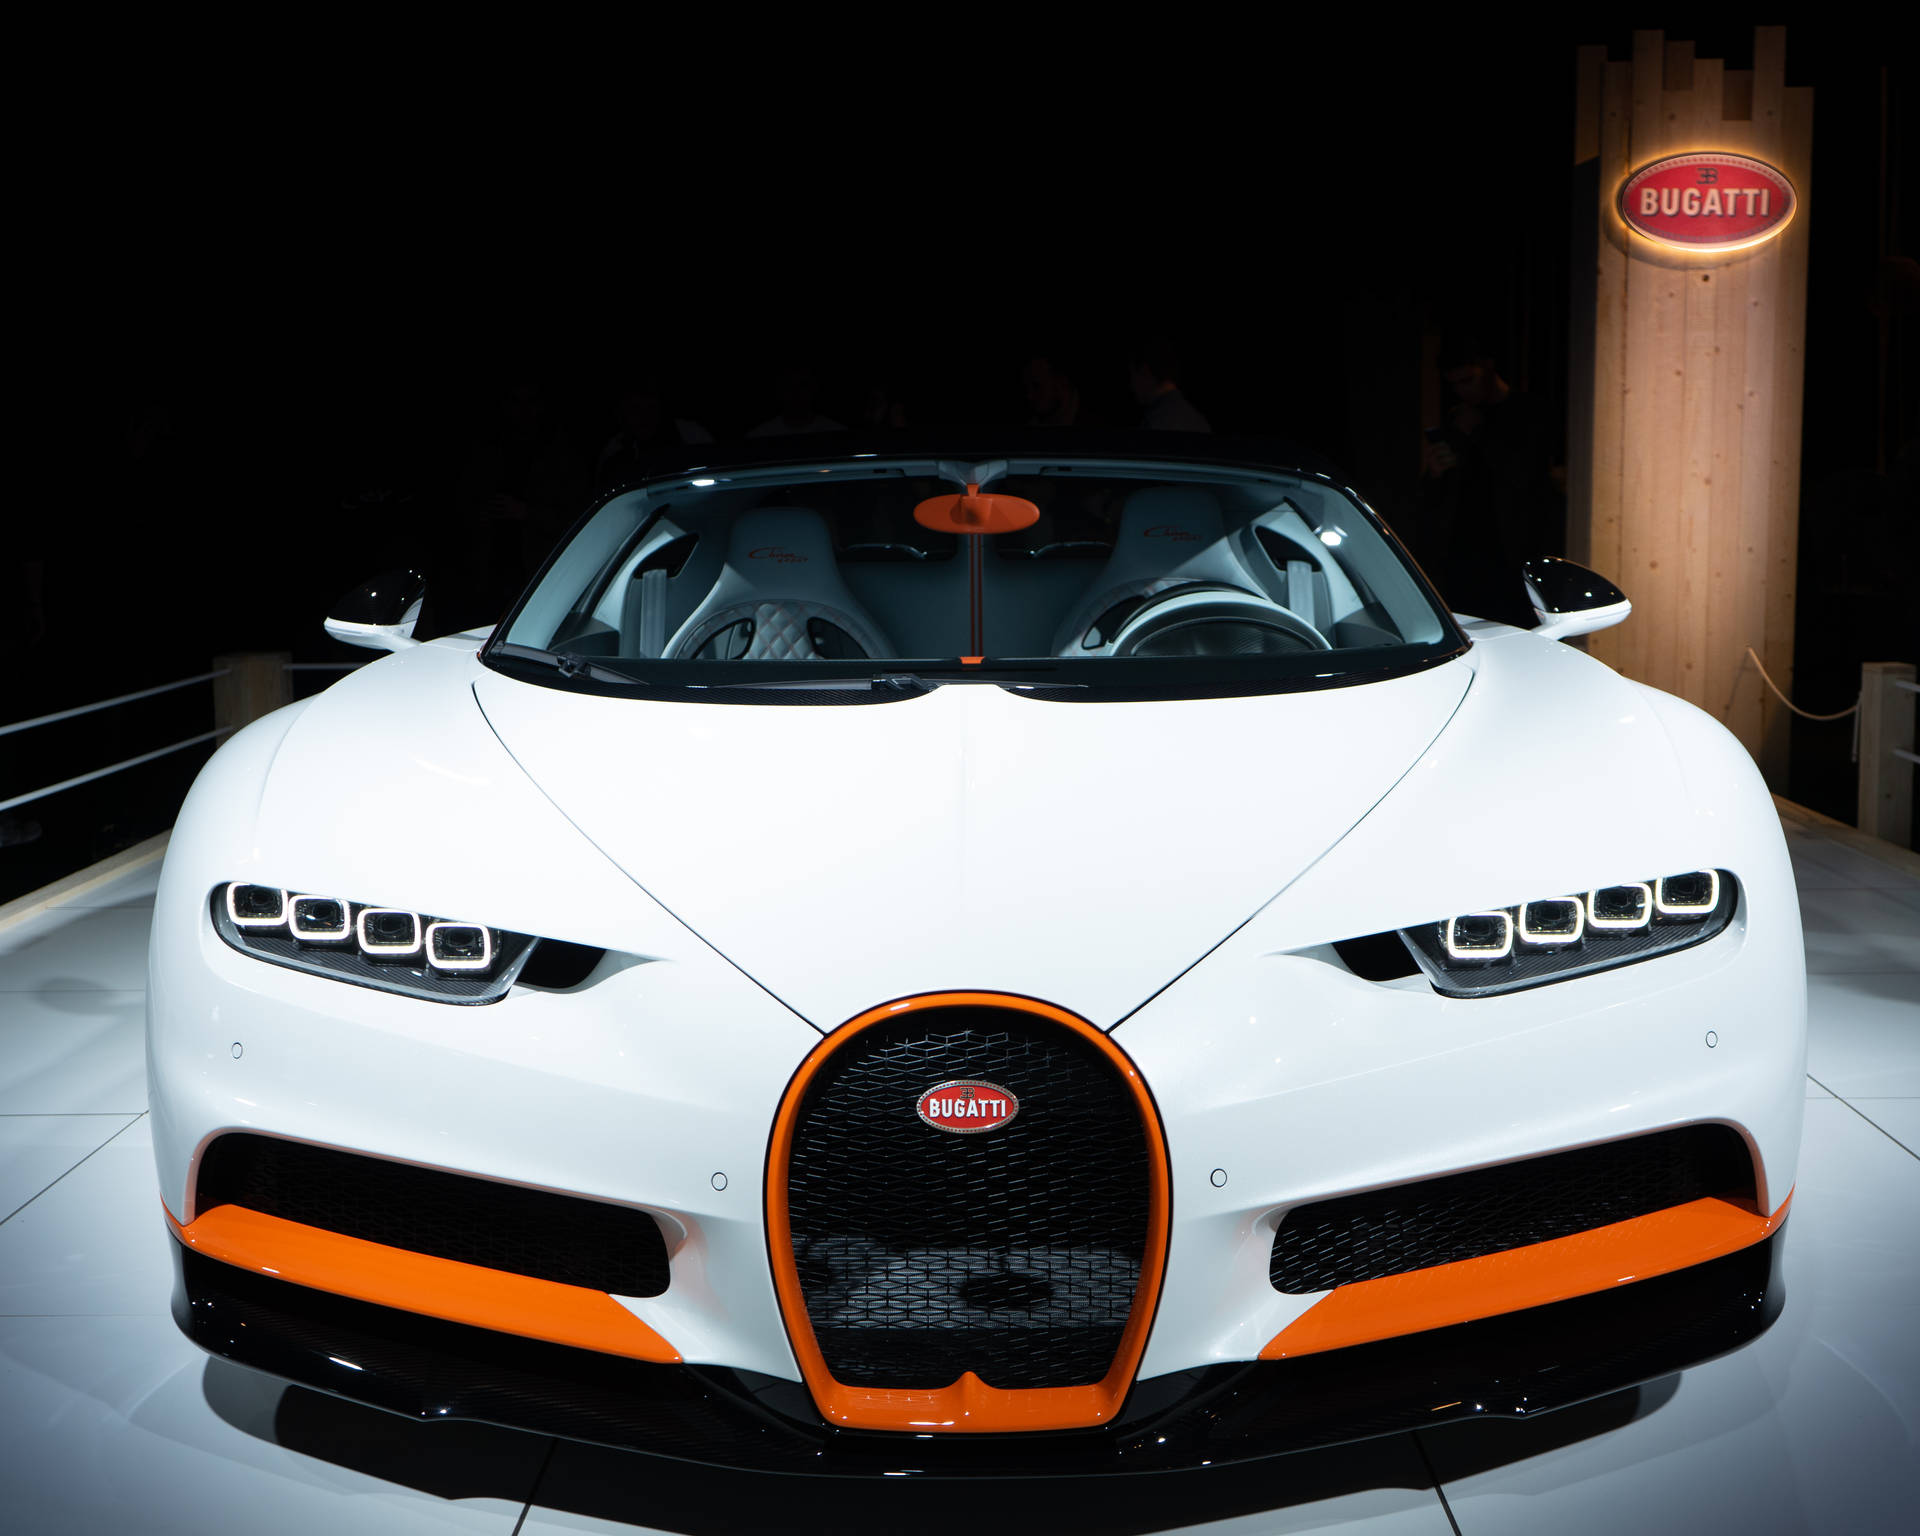 5000X4000 Bugatti Wallpaper and Background